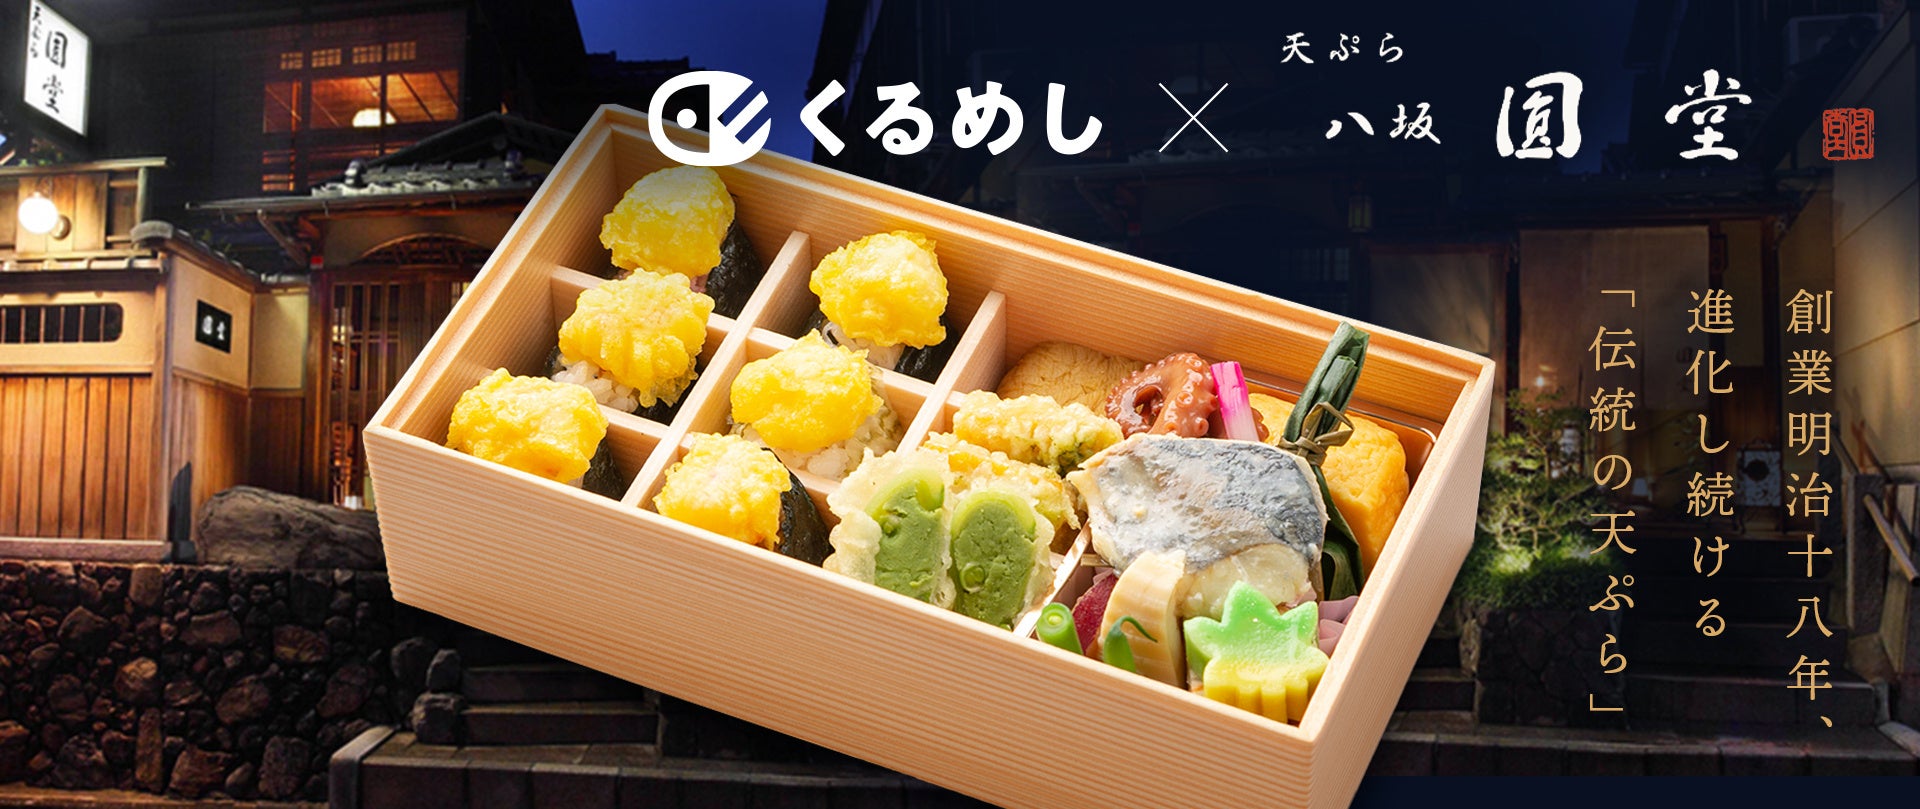 食べログ 天ぷら 百名店 掲載 「天ぷら八坂圓堂」がくるめし弁当で法人向けデリバリーをスタート